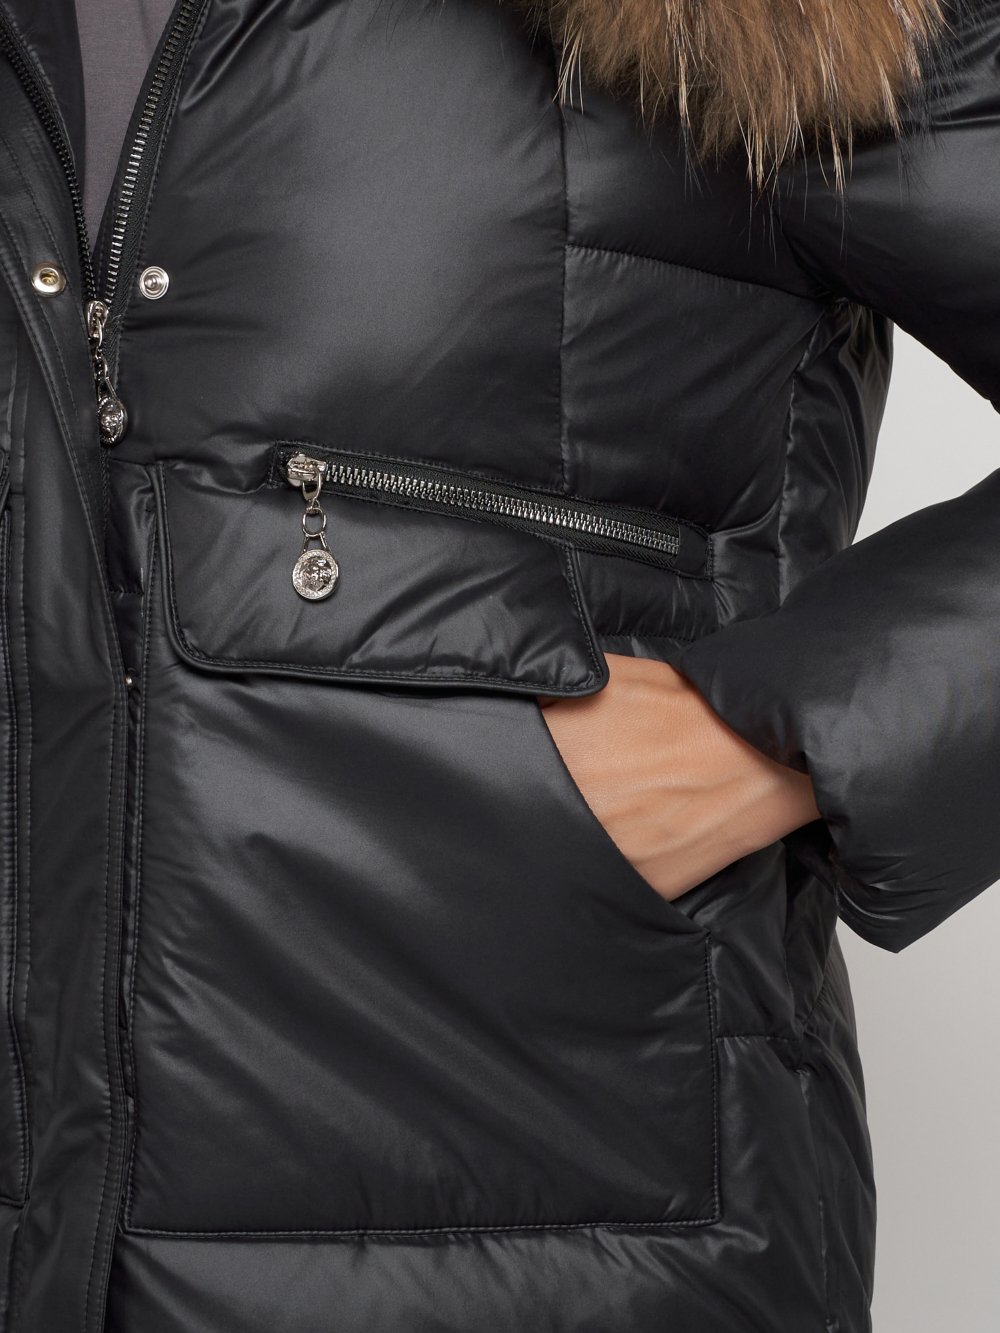 Купить куртку женскую зимнюю оптом от производителя недорого в Москве 132298Ch 1